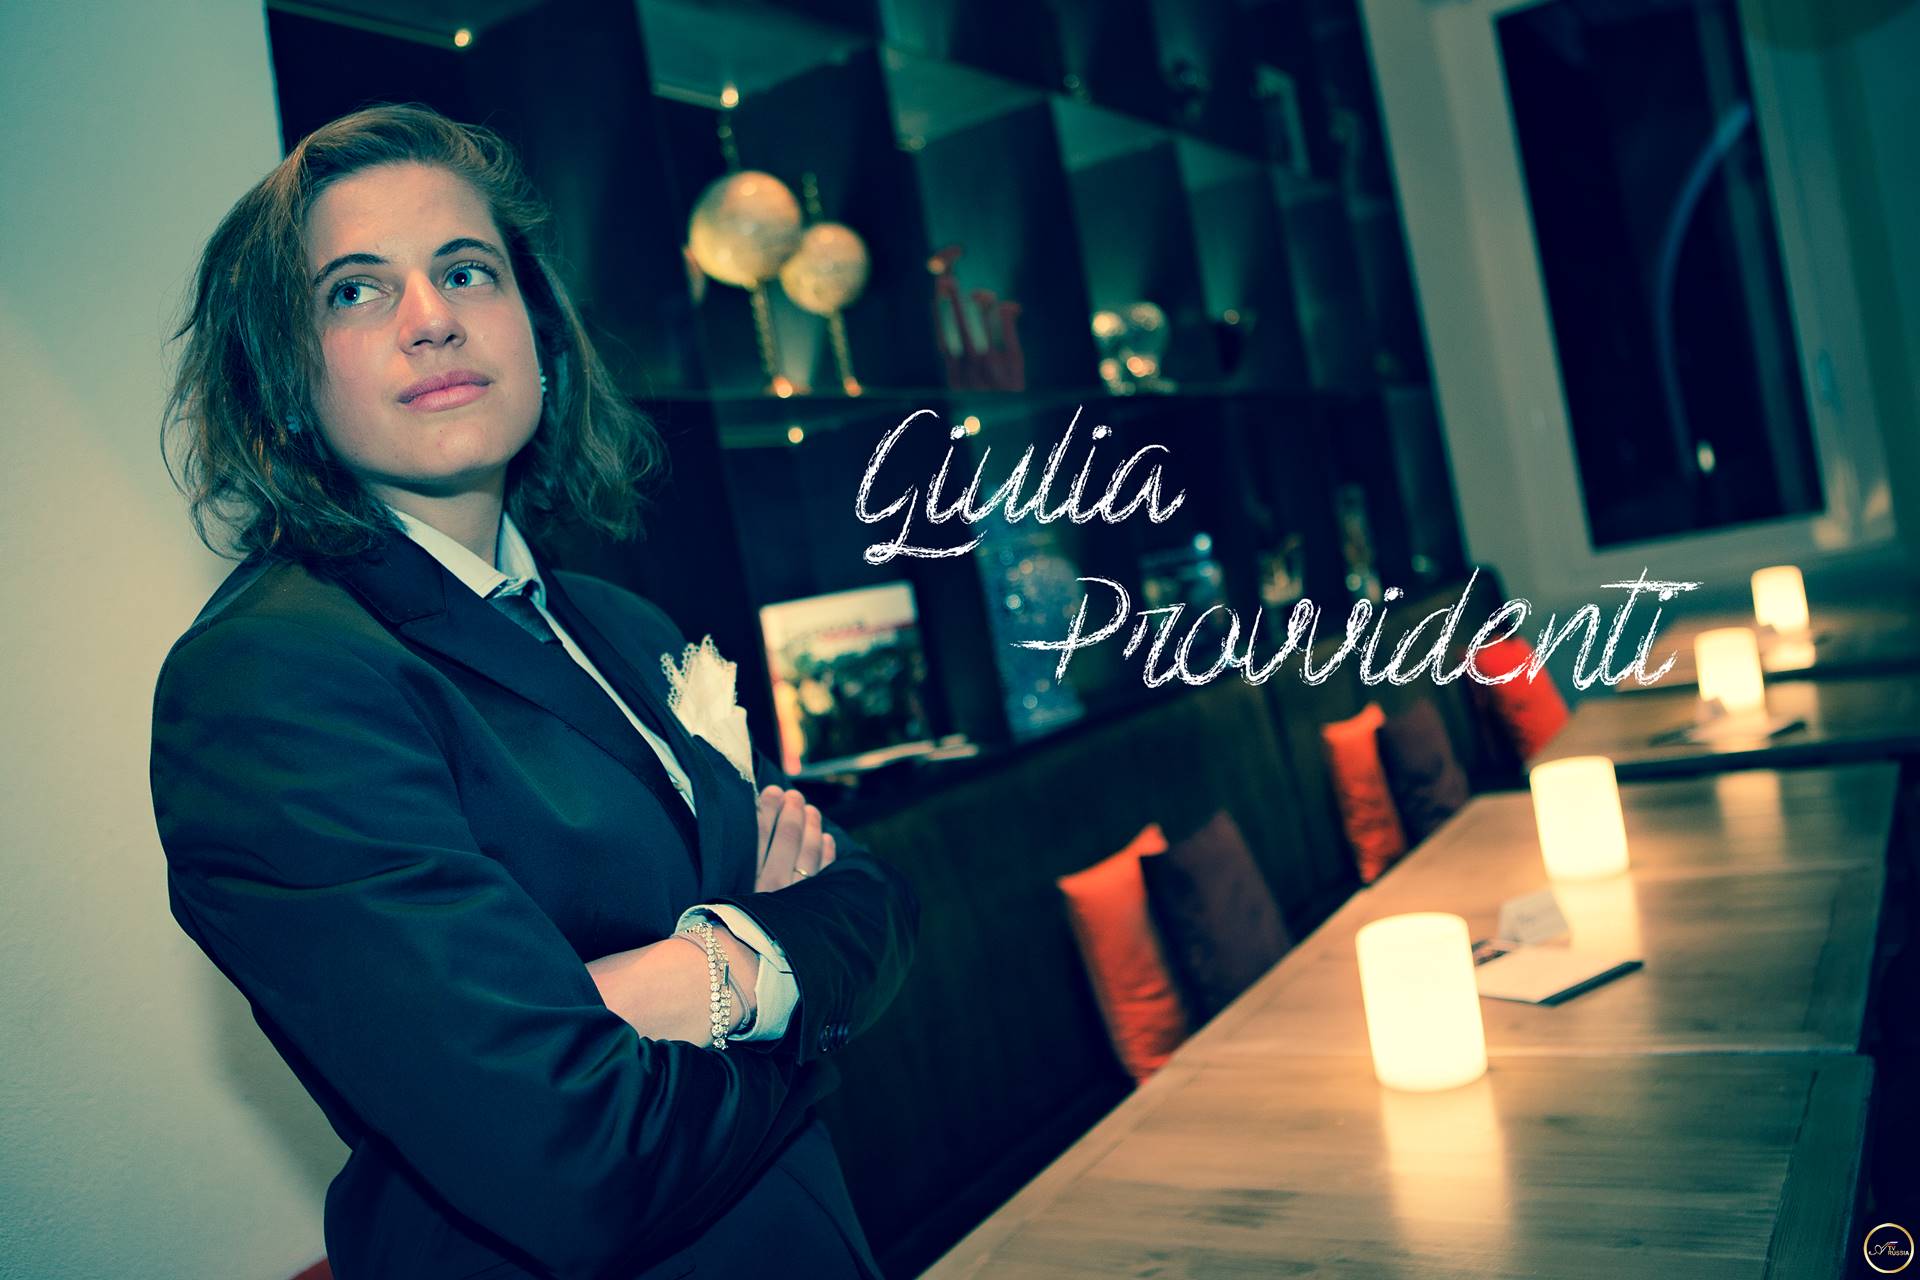 Giulia Provvidenti